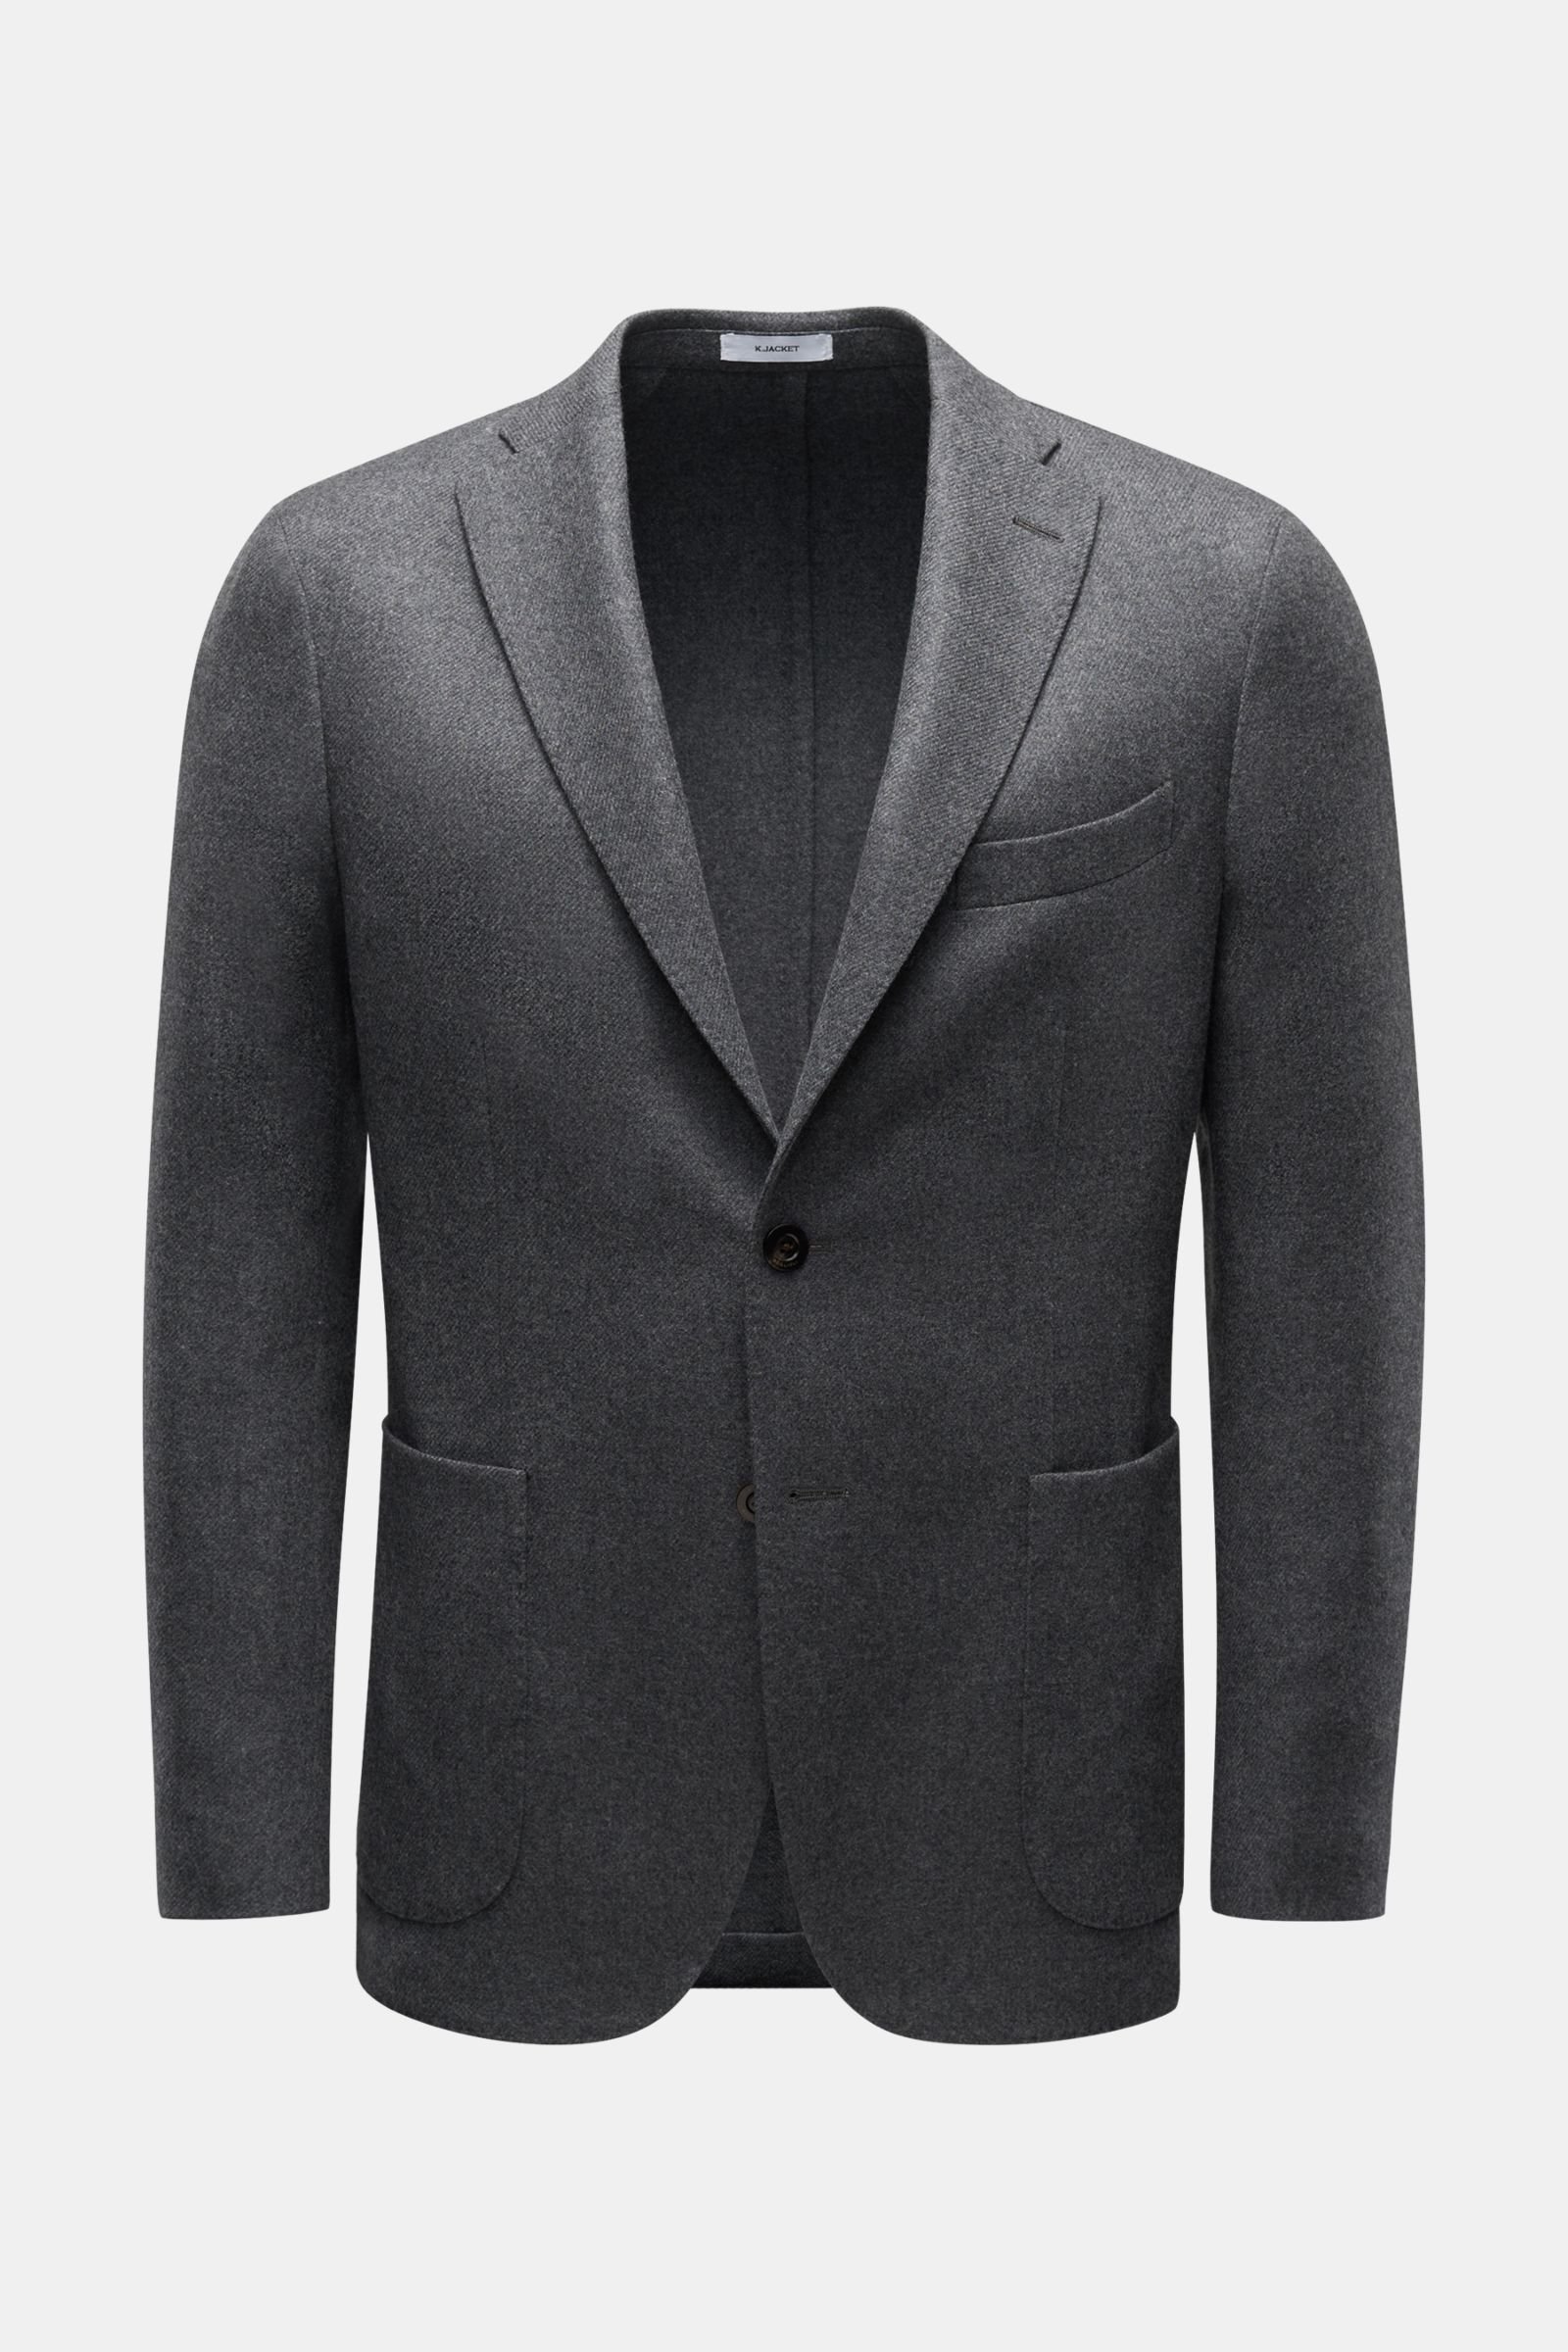 Smart-casual jacket 'K.Jacket' dark grey